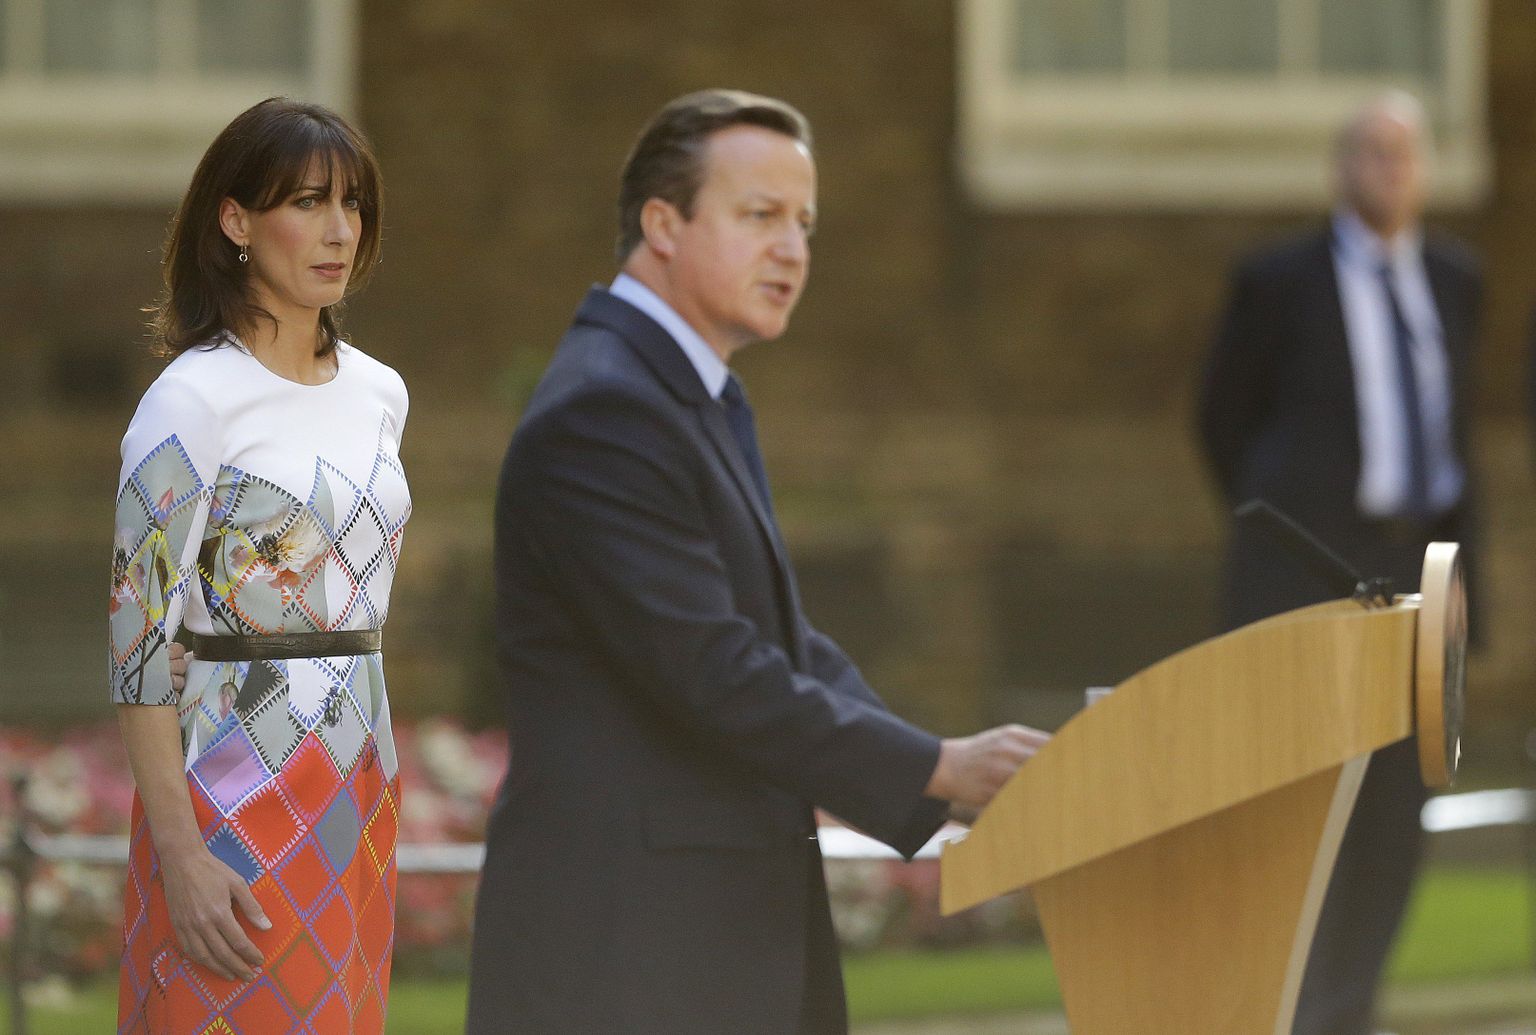 Briti peaminister David Cameron eile Londonis oma tagasiastumisest teatamas, kõrval toetamas abikaasa Samantha.